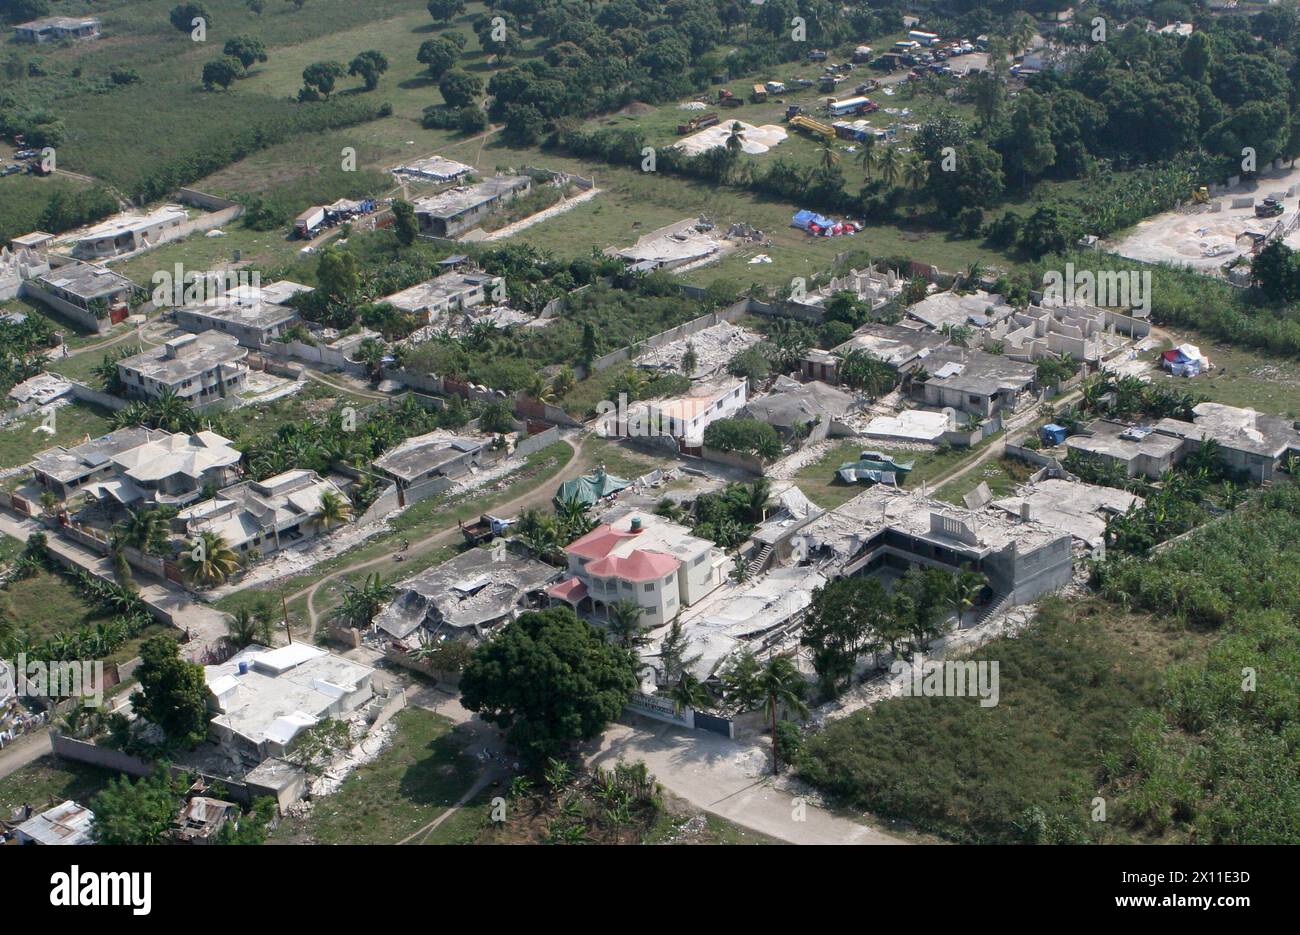 Léogane, Haïti, est en ruine, le 20 janvier 2010 après un tremblement de terre dévasté Haïti le 12 janvier 2010. Banque D'Images